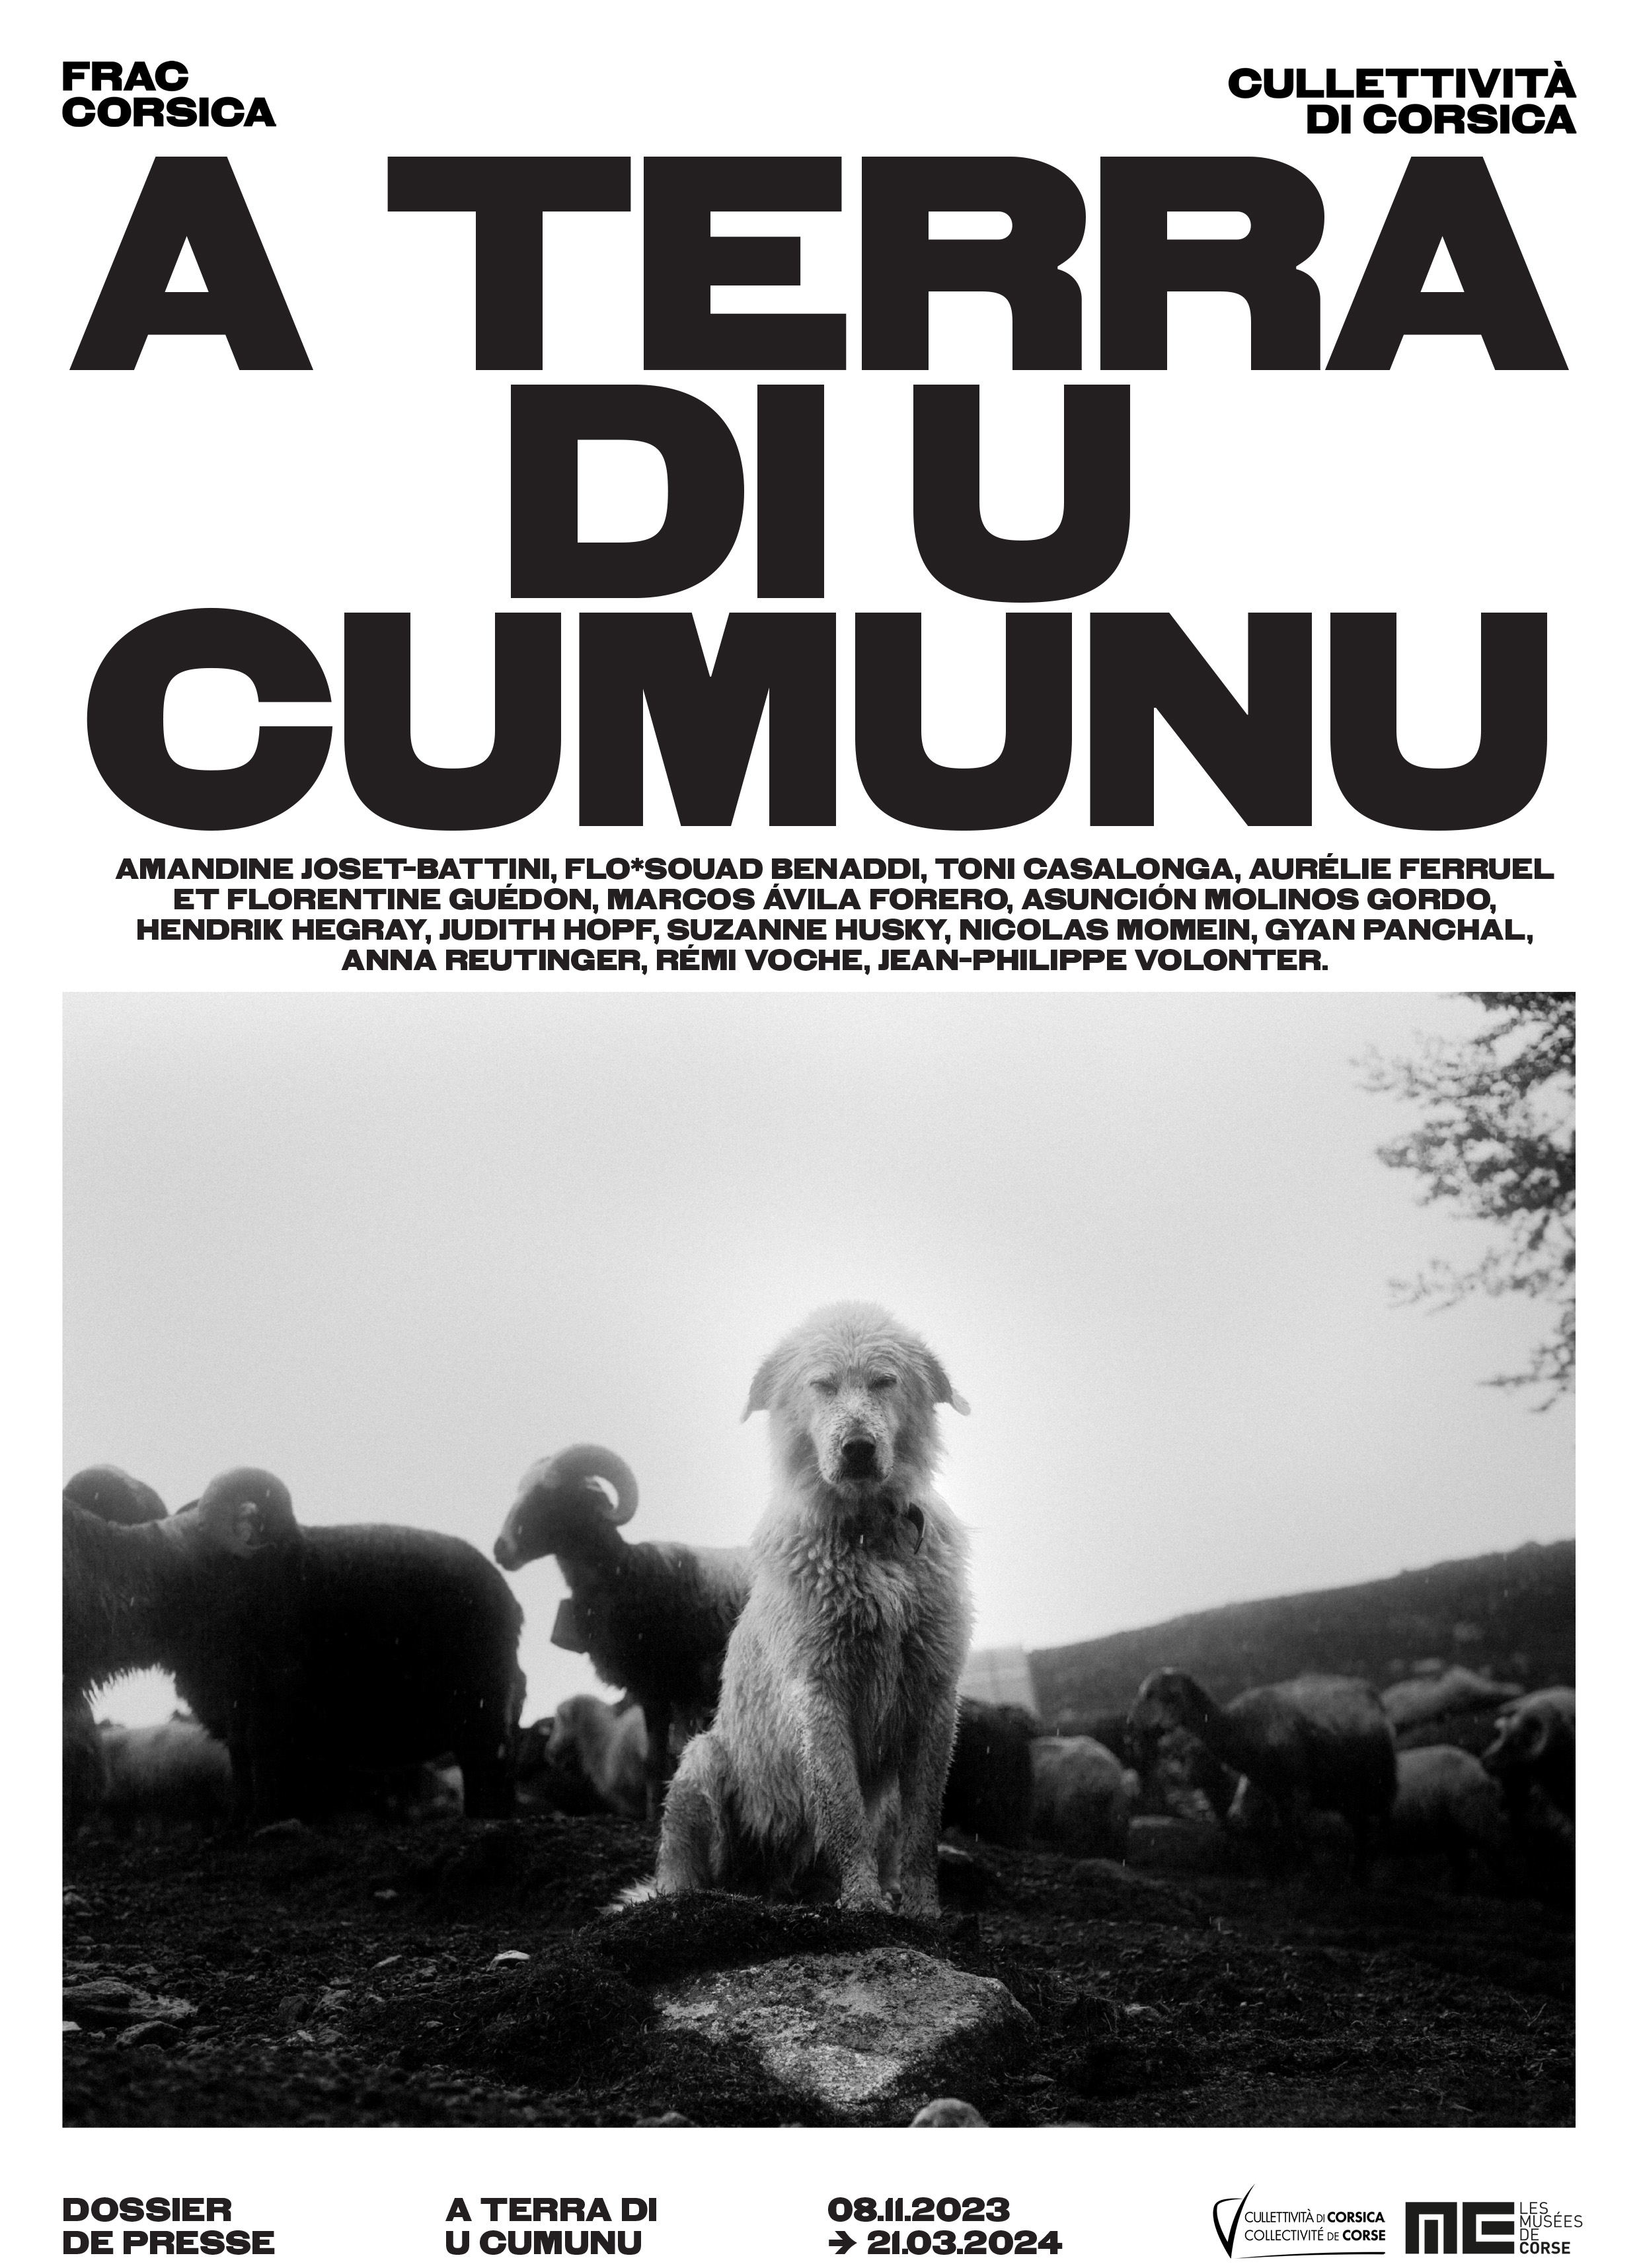 "A terra di u cumunu", une exposition à découvrir au FRAC Corsica